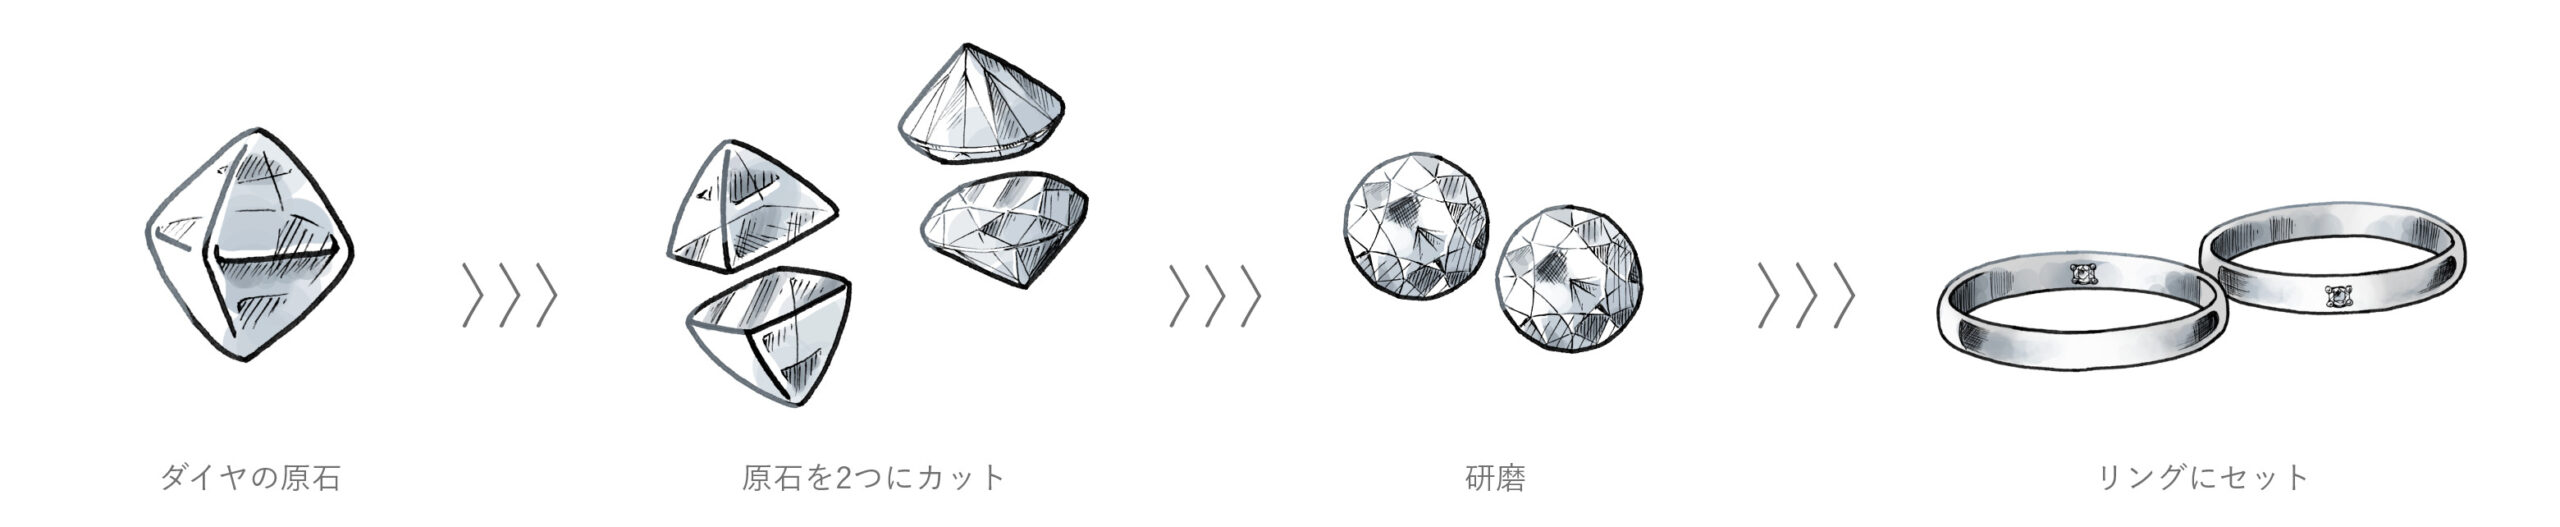 ツインダイヤモンドの製造工程の流れ